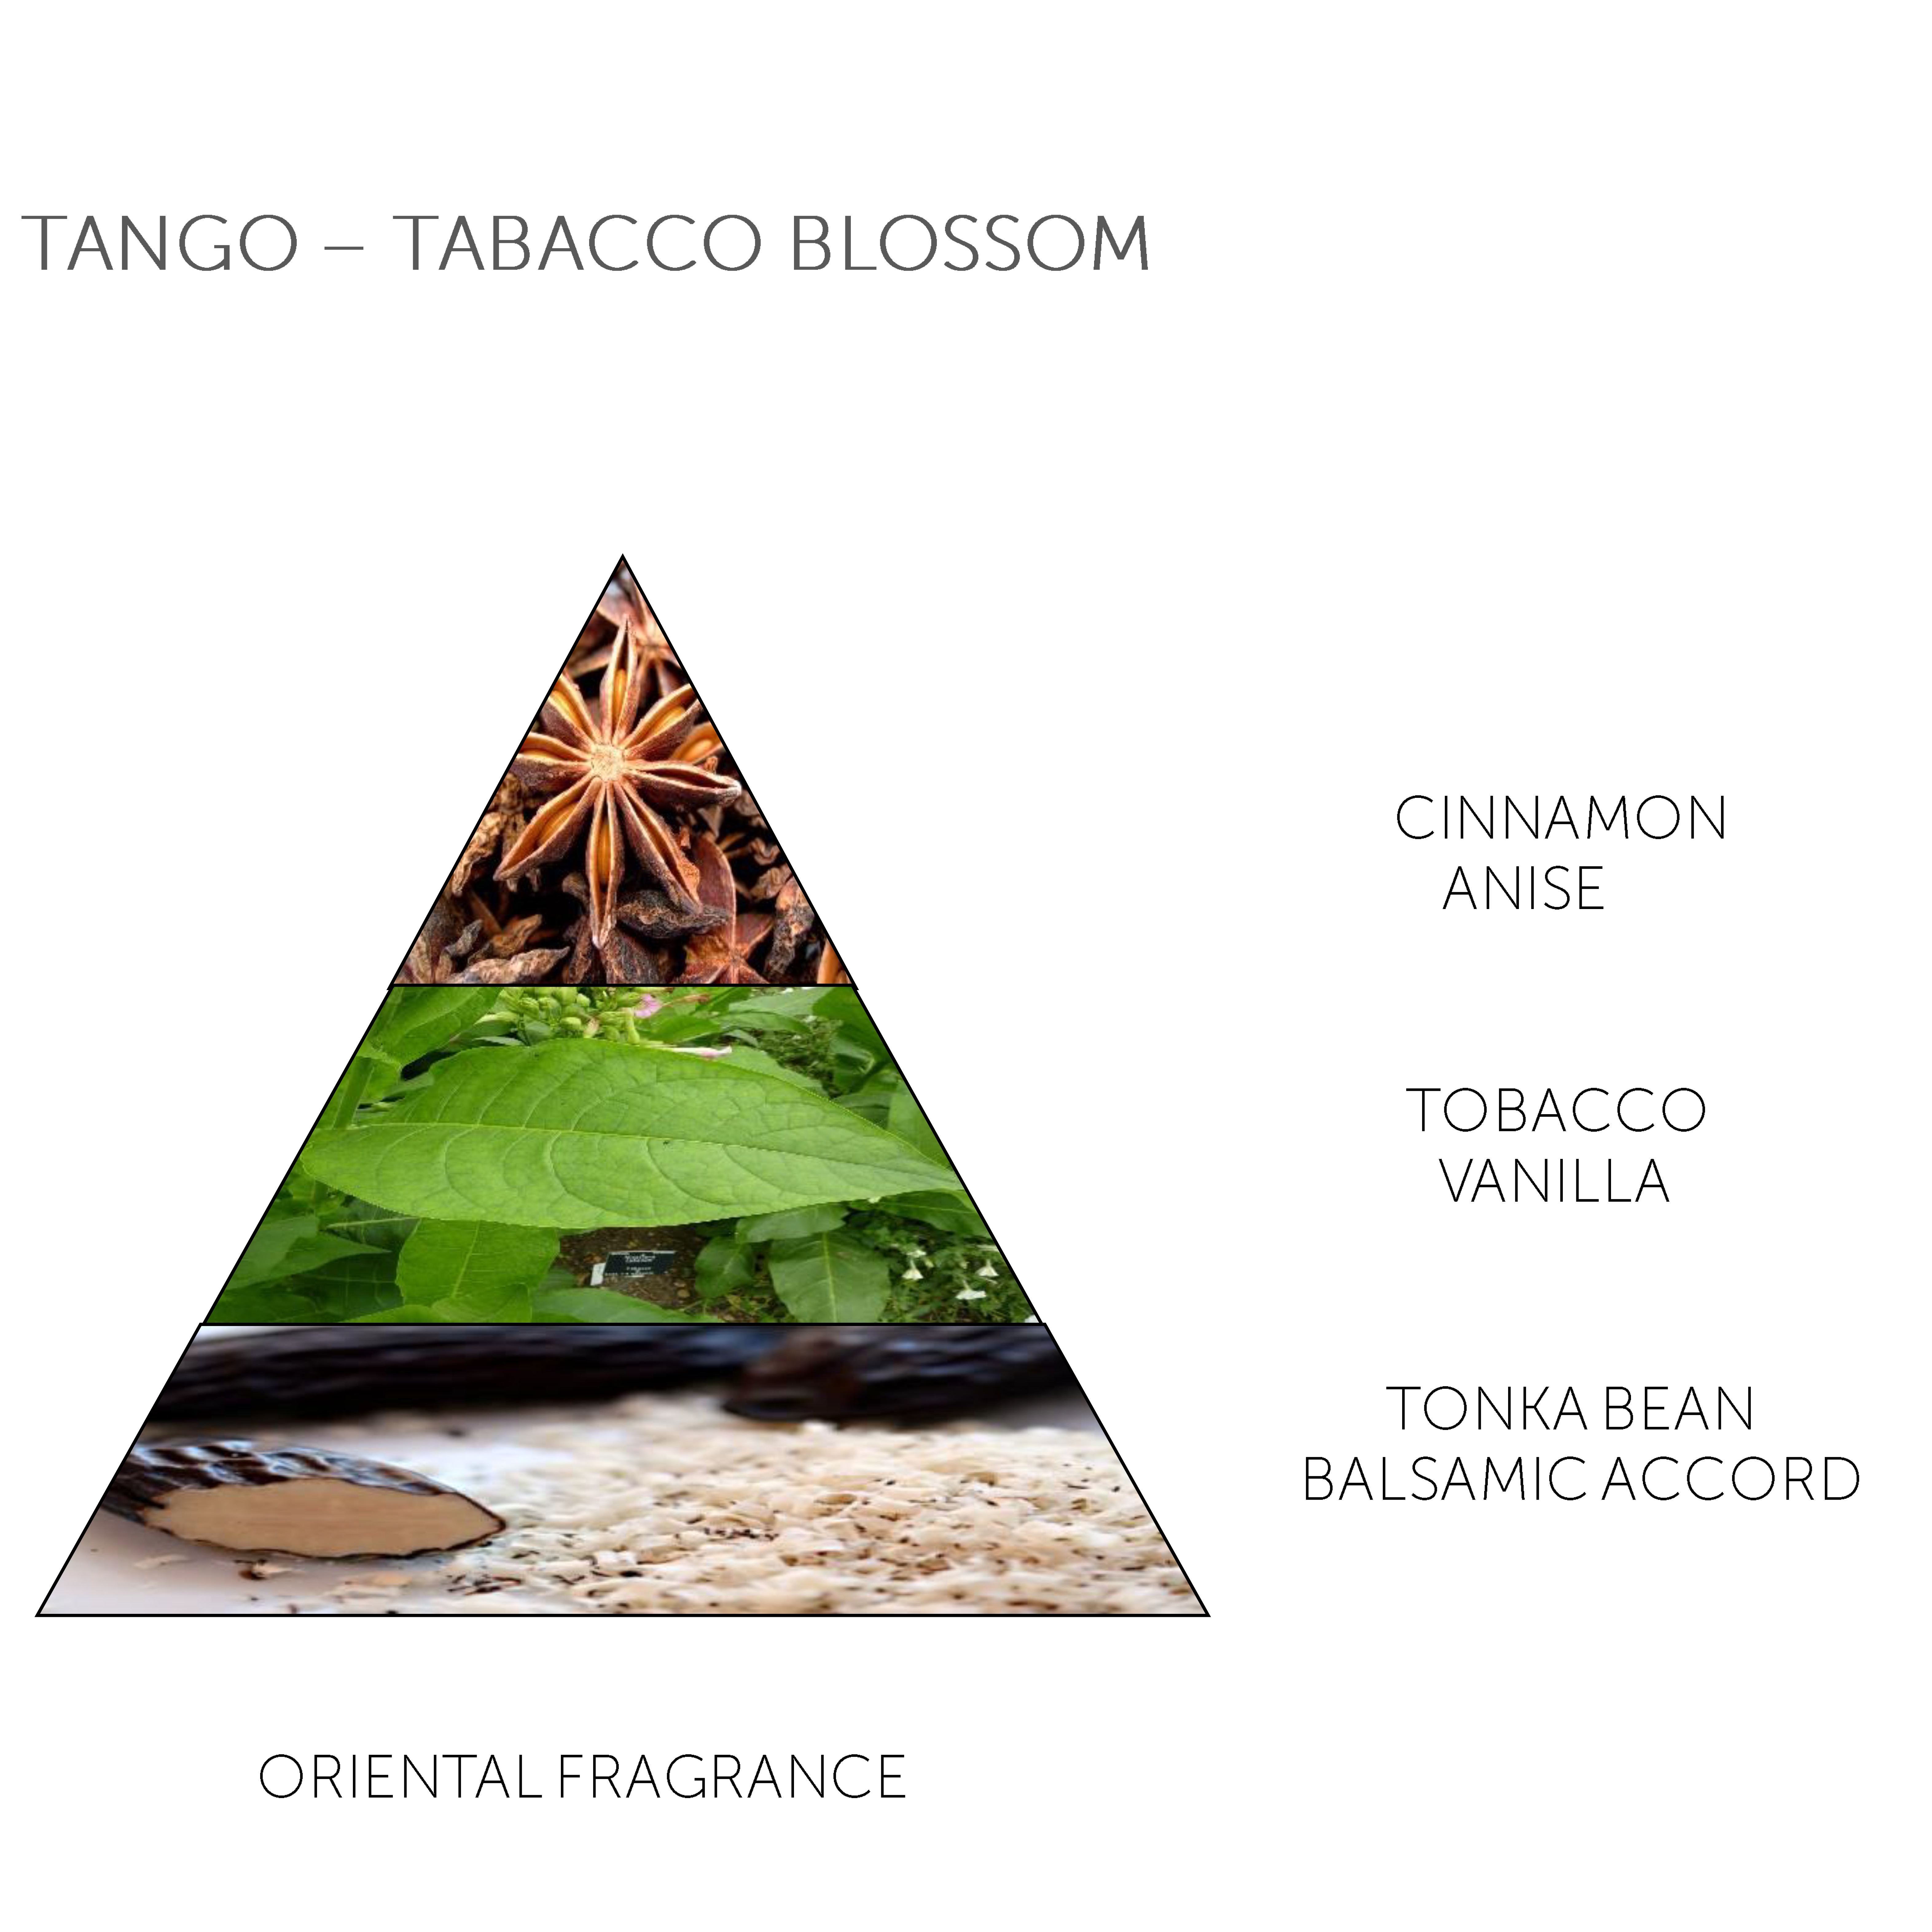 Claus Porto Soap Bar Tango Tobacco Blossom 150g - 4.1 - CP-F009W